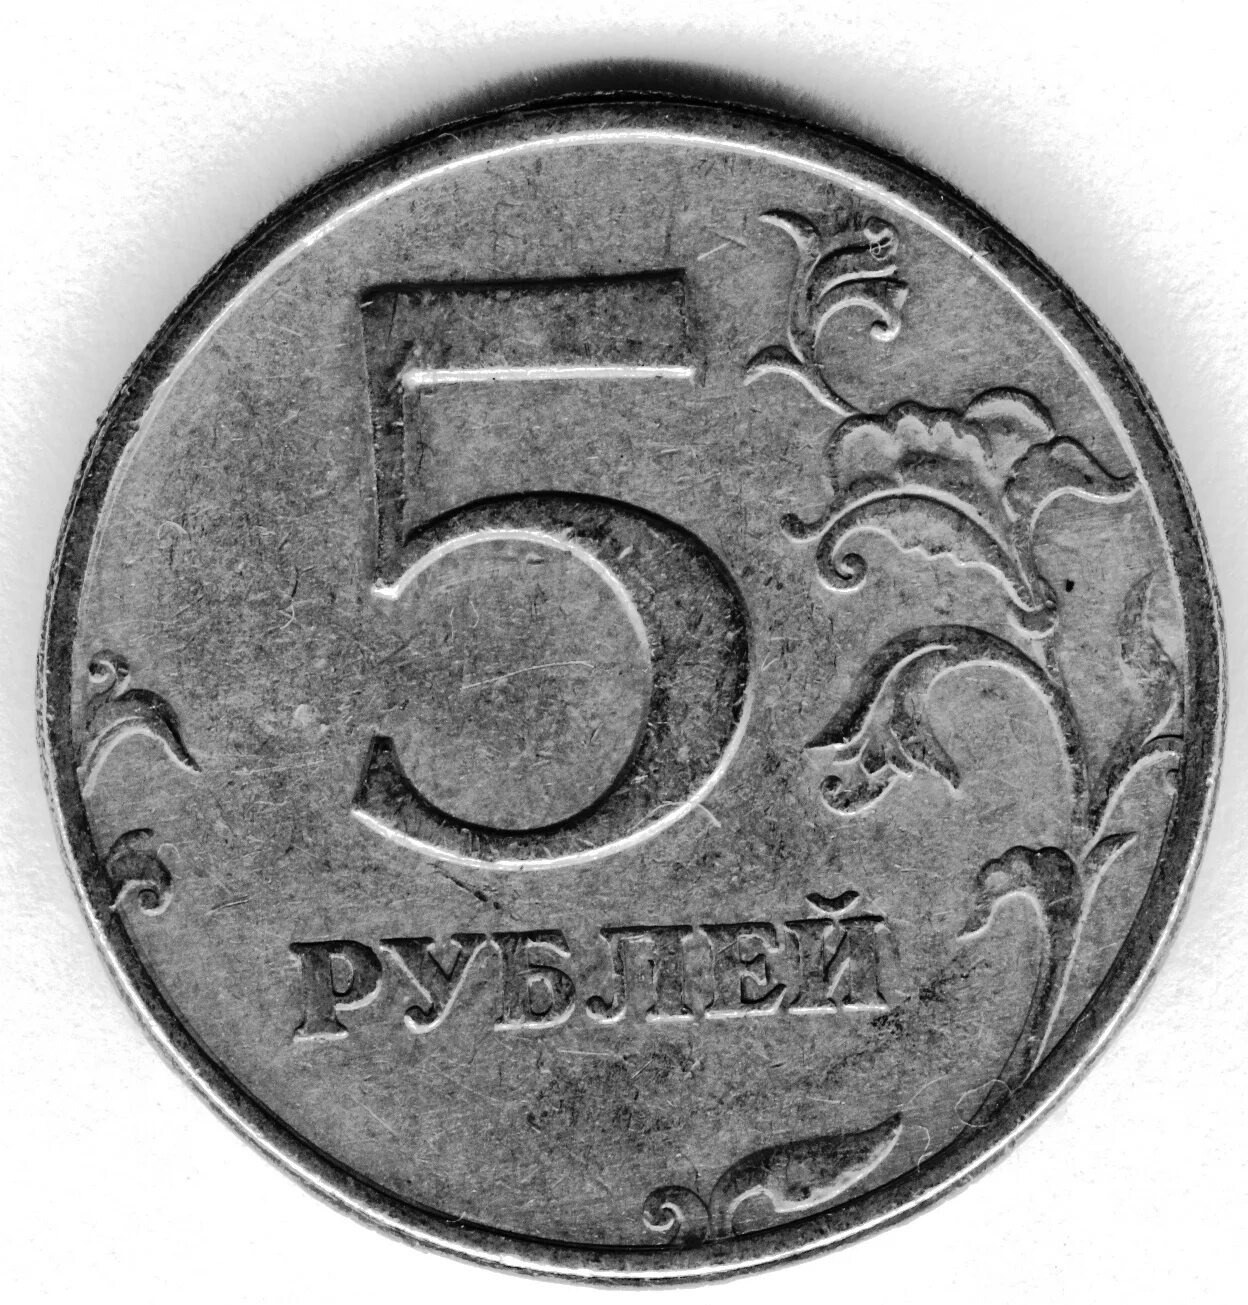 5 Рублей. Монеты 5 рублей современной. Пять рублей. Старые монеты 5 рублей.